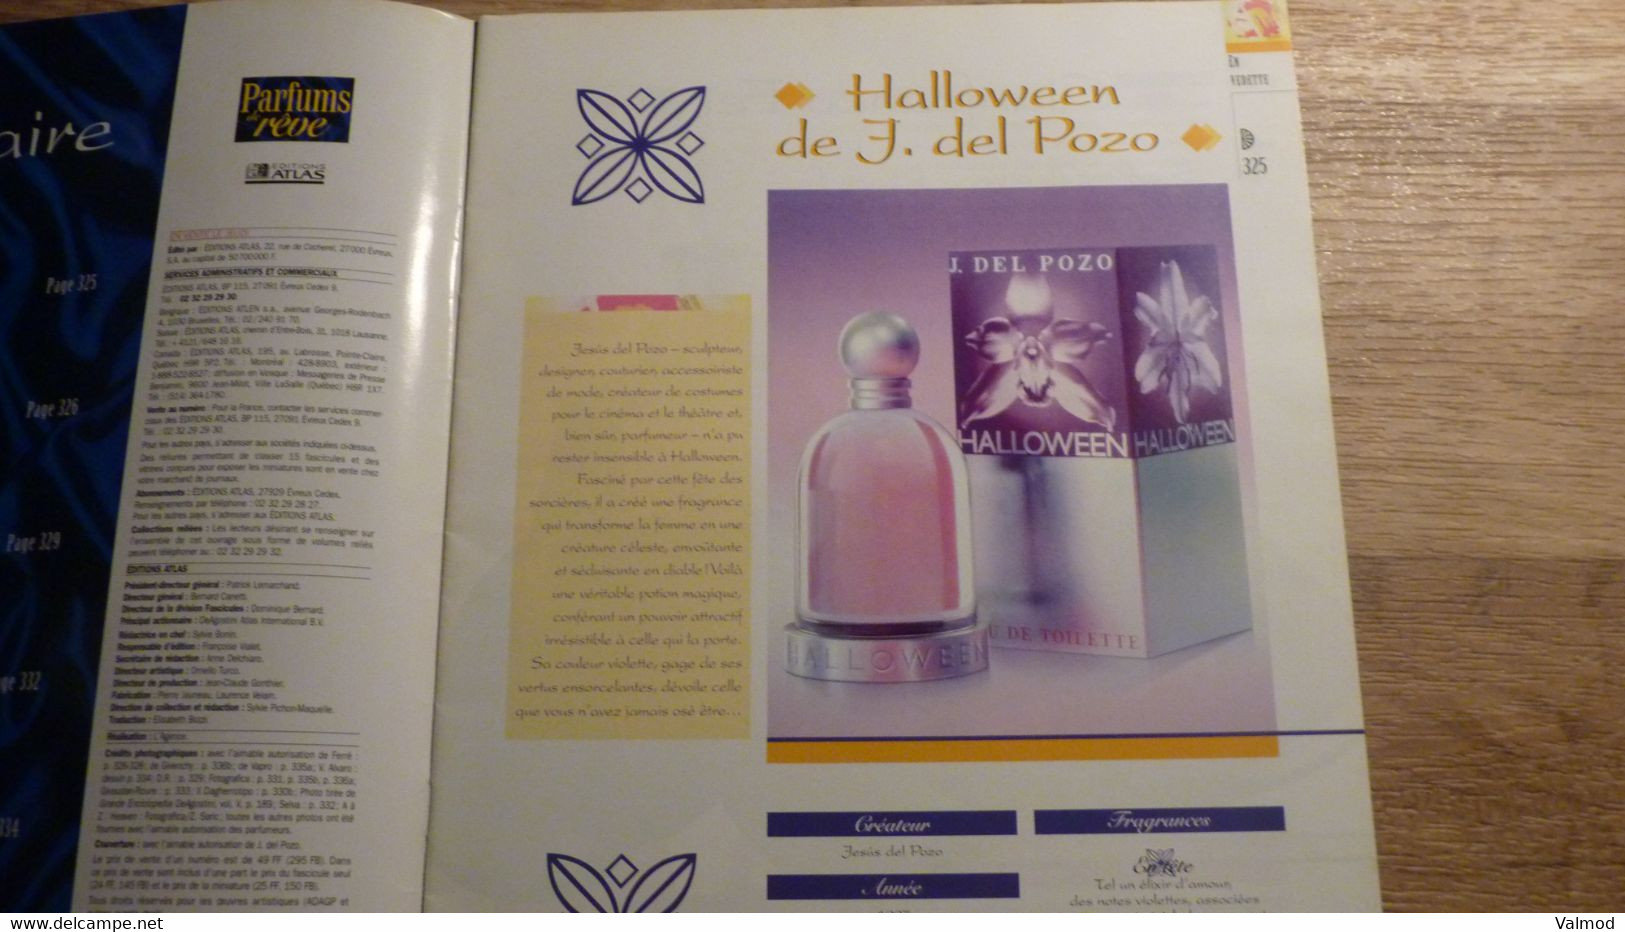 Magazine "Parfums De Rêve" N° 28 - J. Del Pozo "Halloween" - Editions Atlas - Zeitschriften